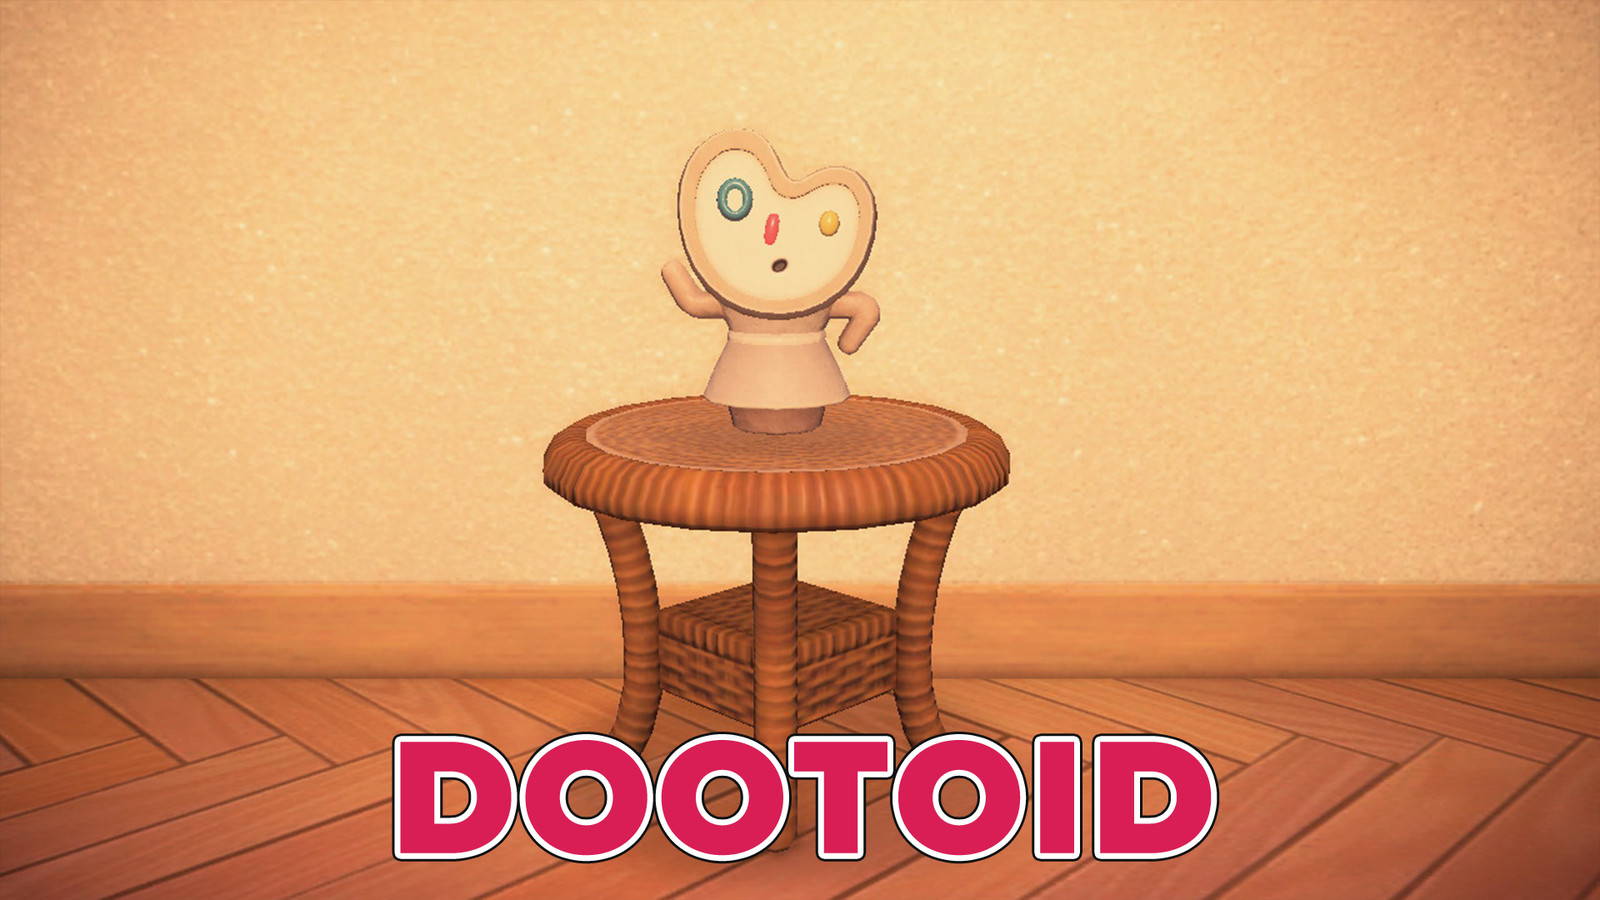 Dootoid